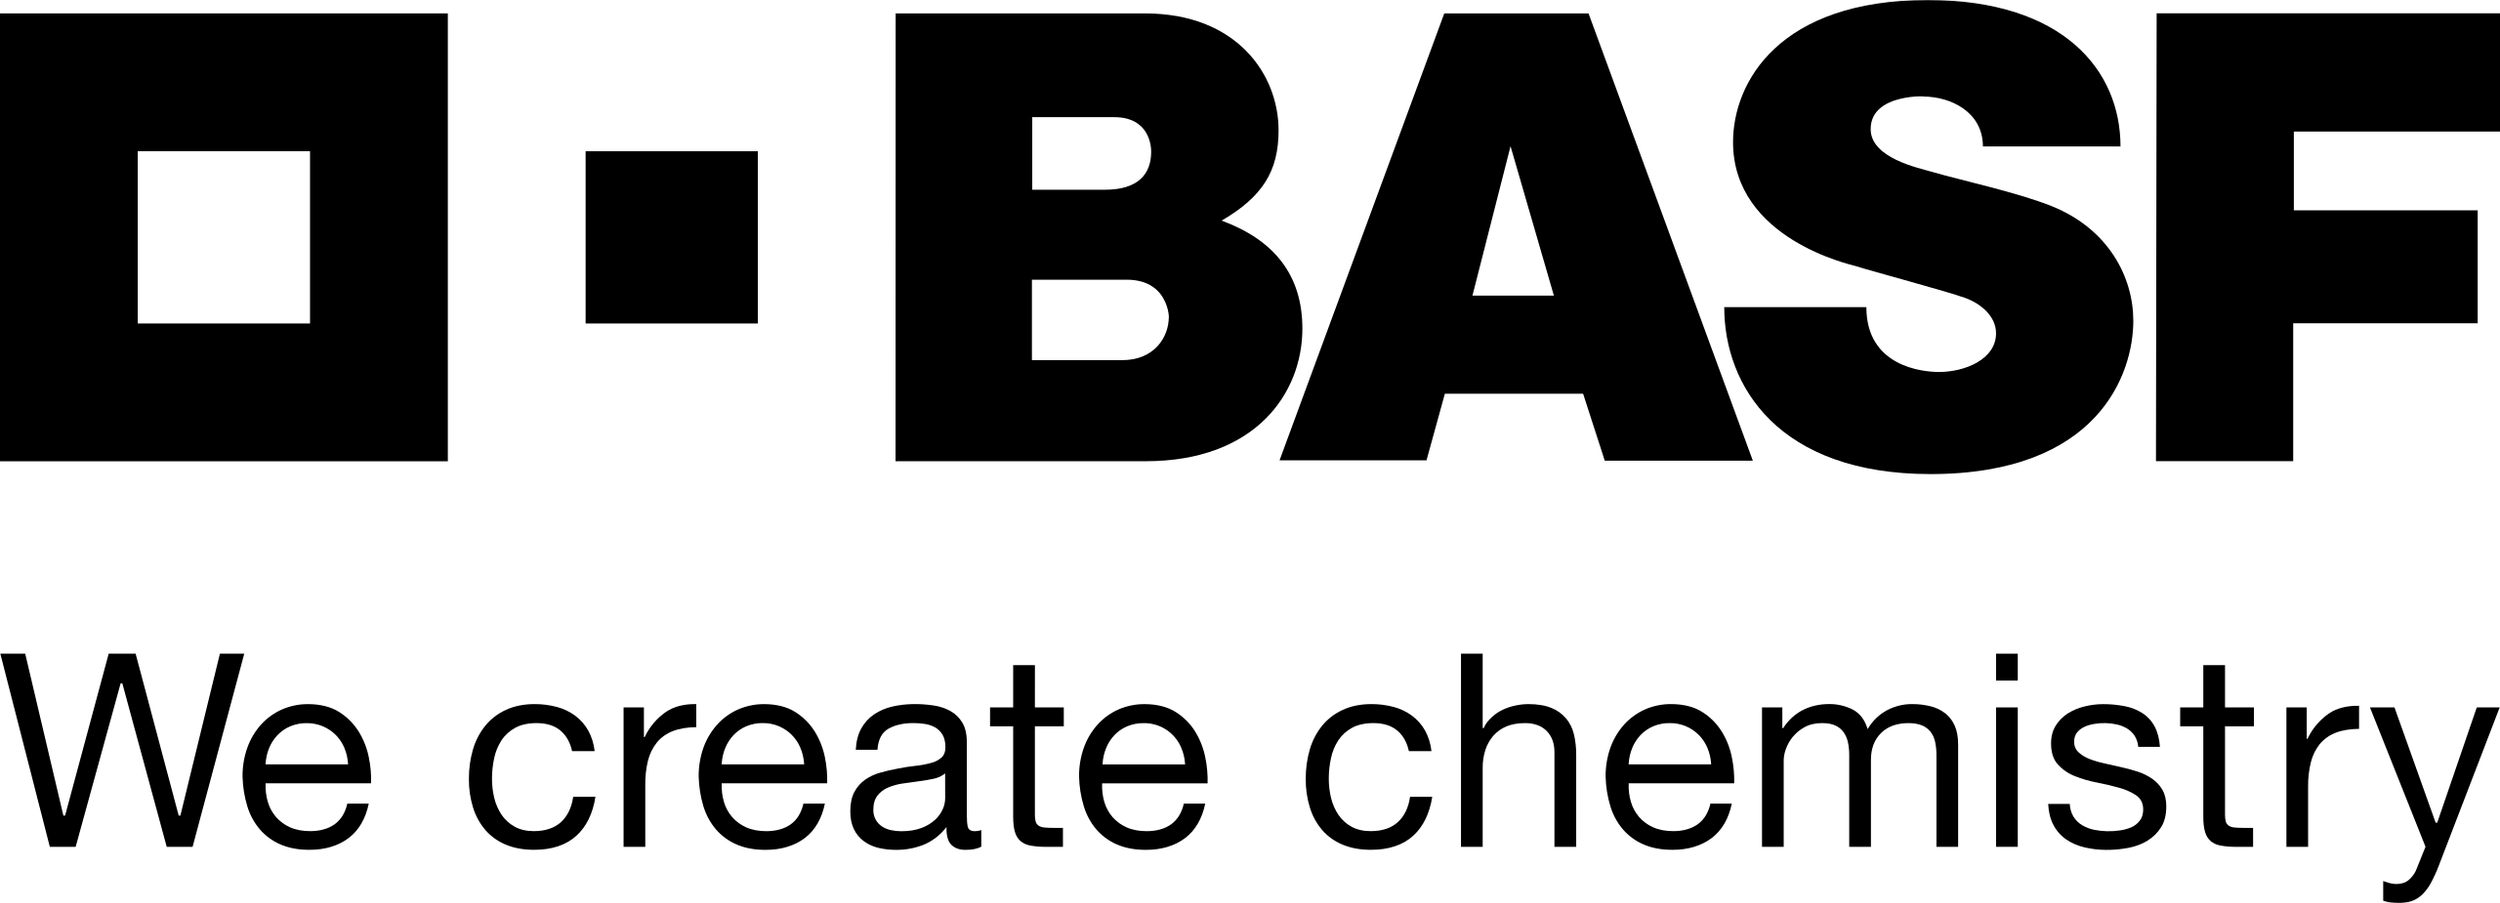 BASF-Logo_bw.svg-2560x925.png